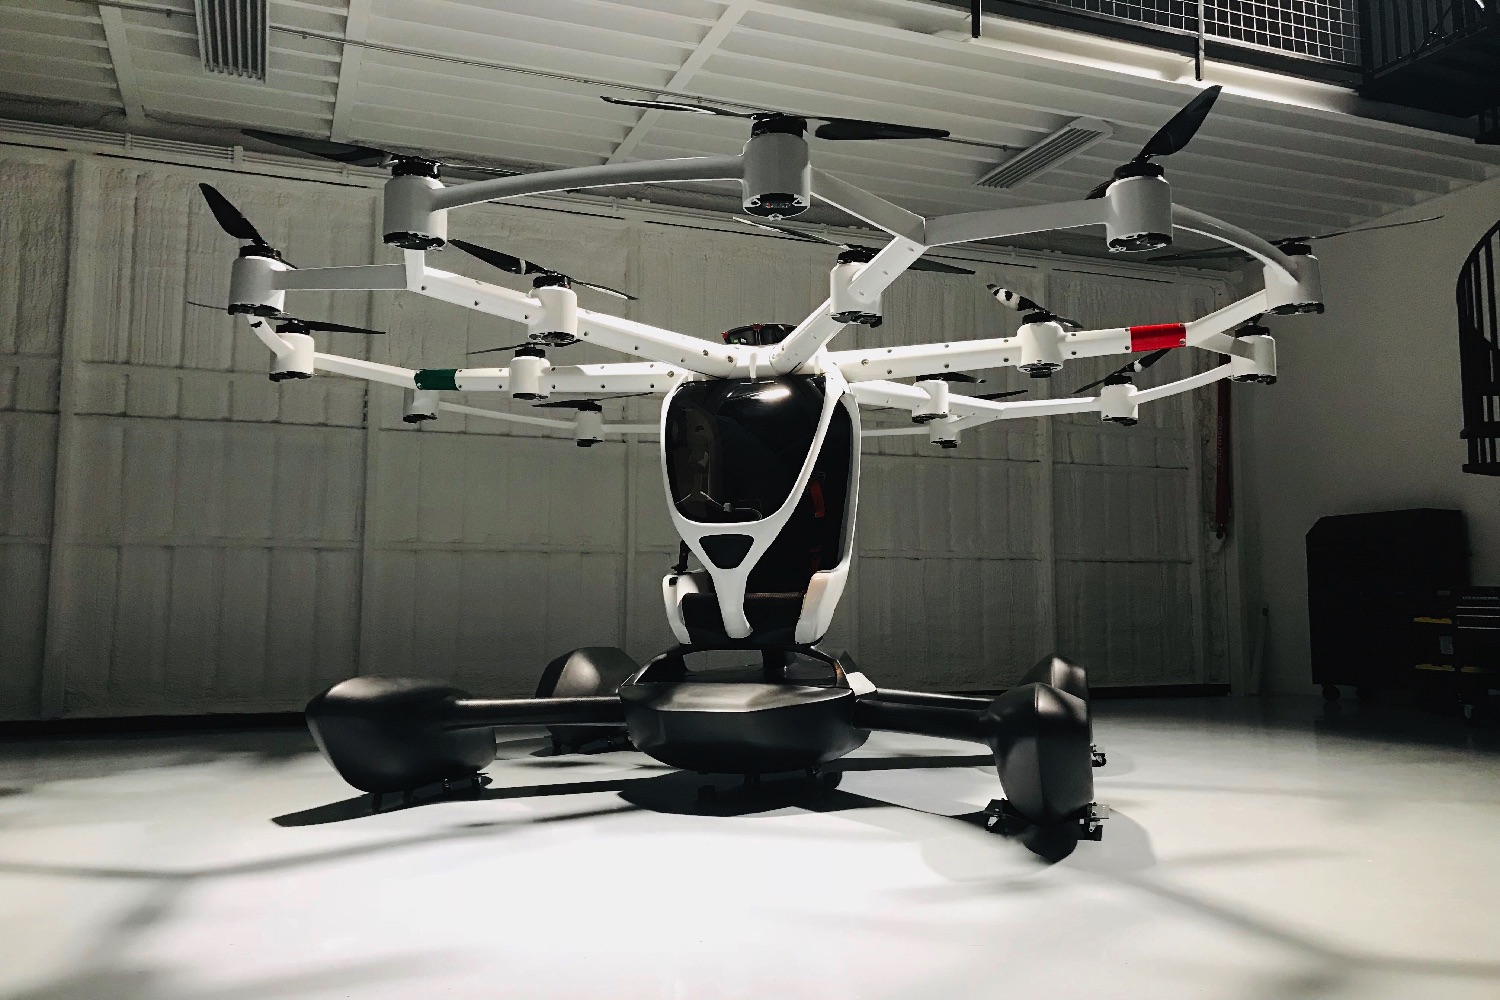 lift aircraft drone rides 2019 img 2128